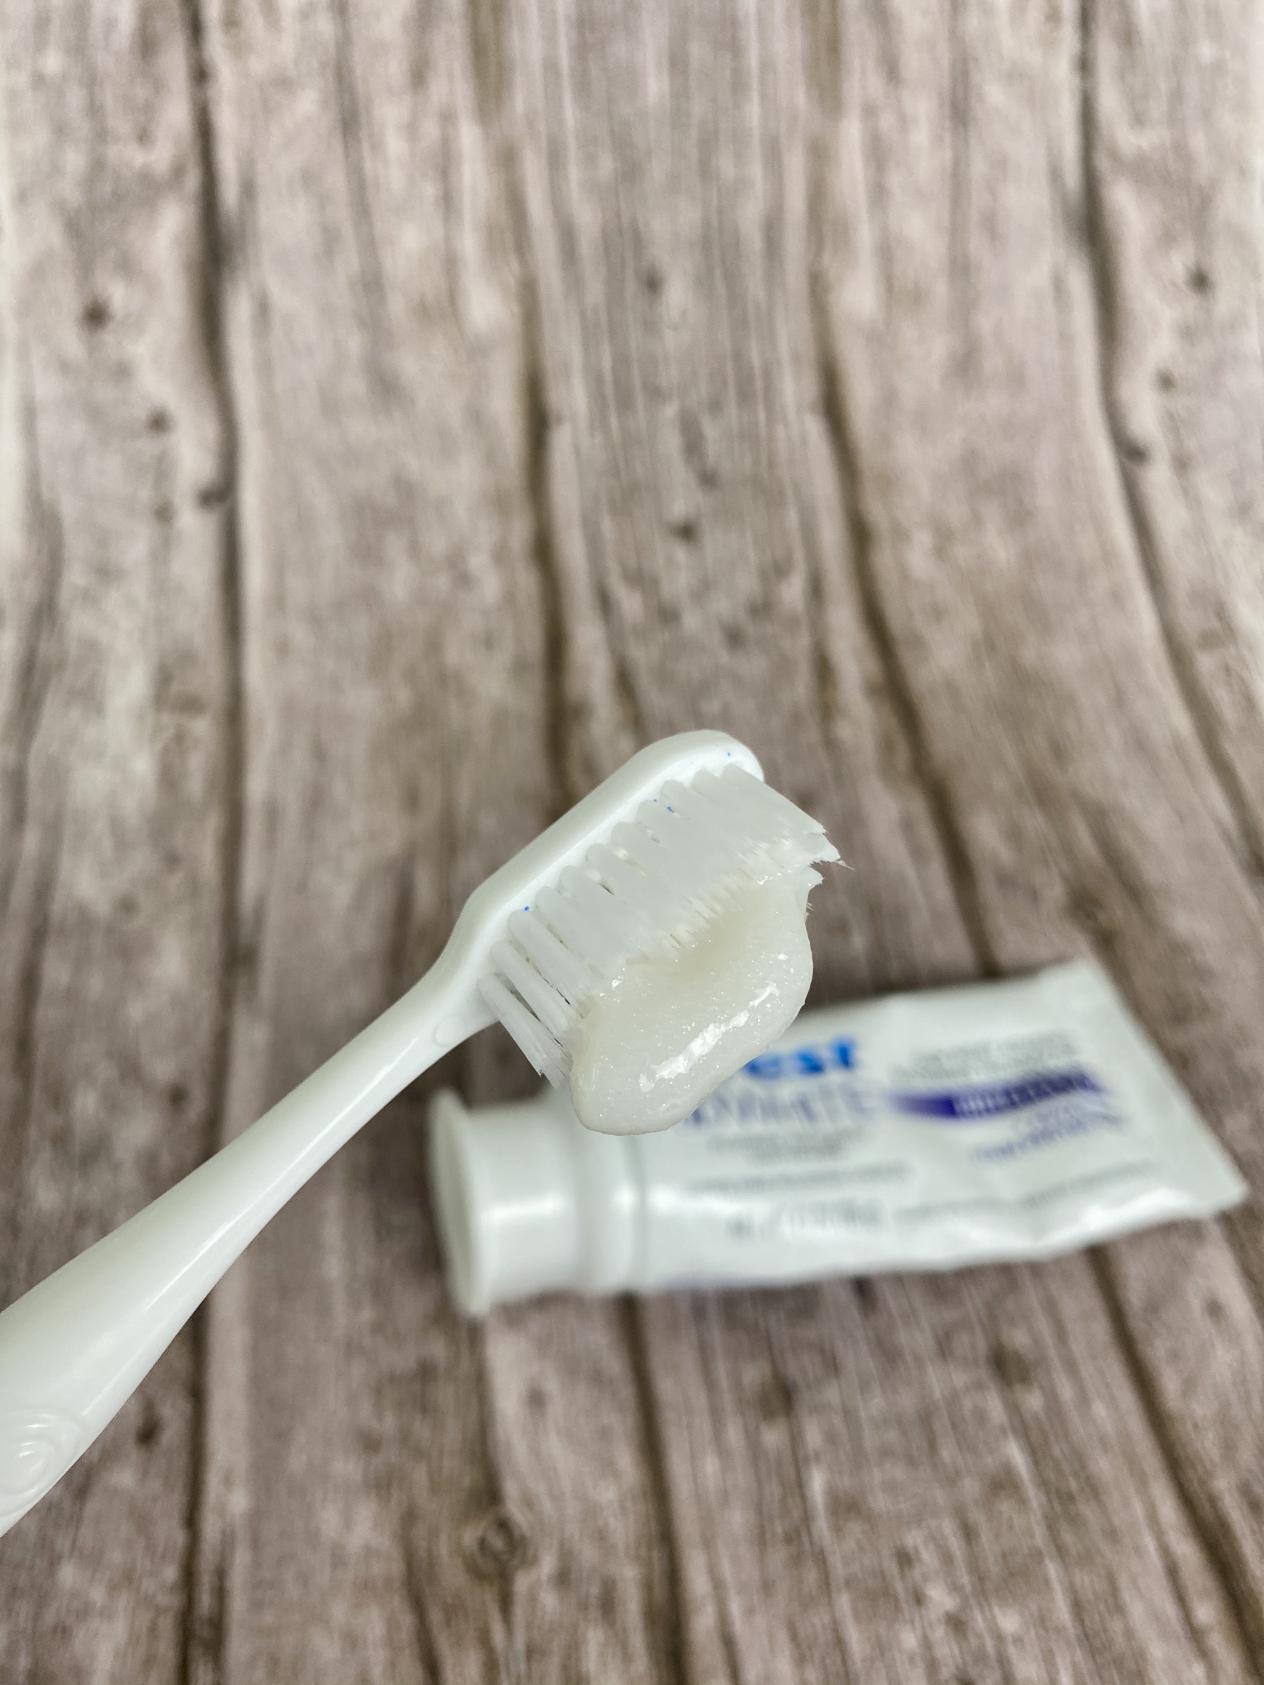 【2022牙膏测评】牙膏什么牌子好？看这一篇就够了。防蛀、抗敏感、美白、牙周炎、儿童牙膏到底怎么选？ - 知乎